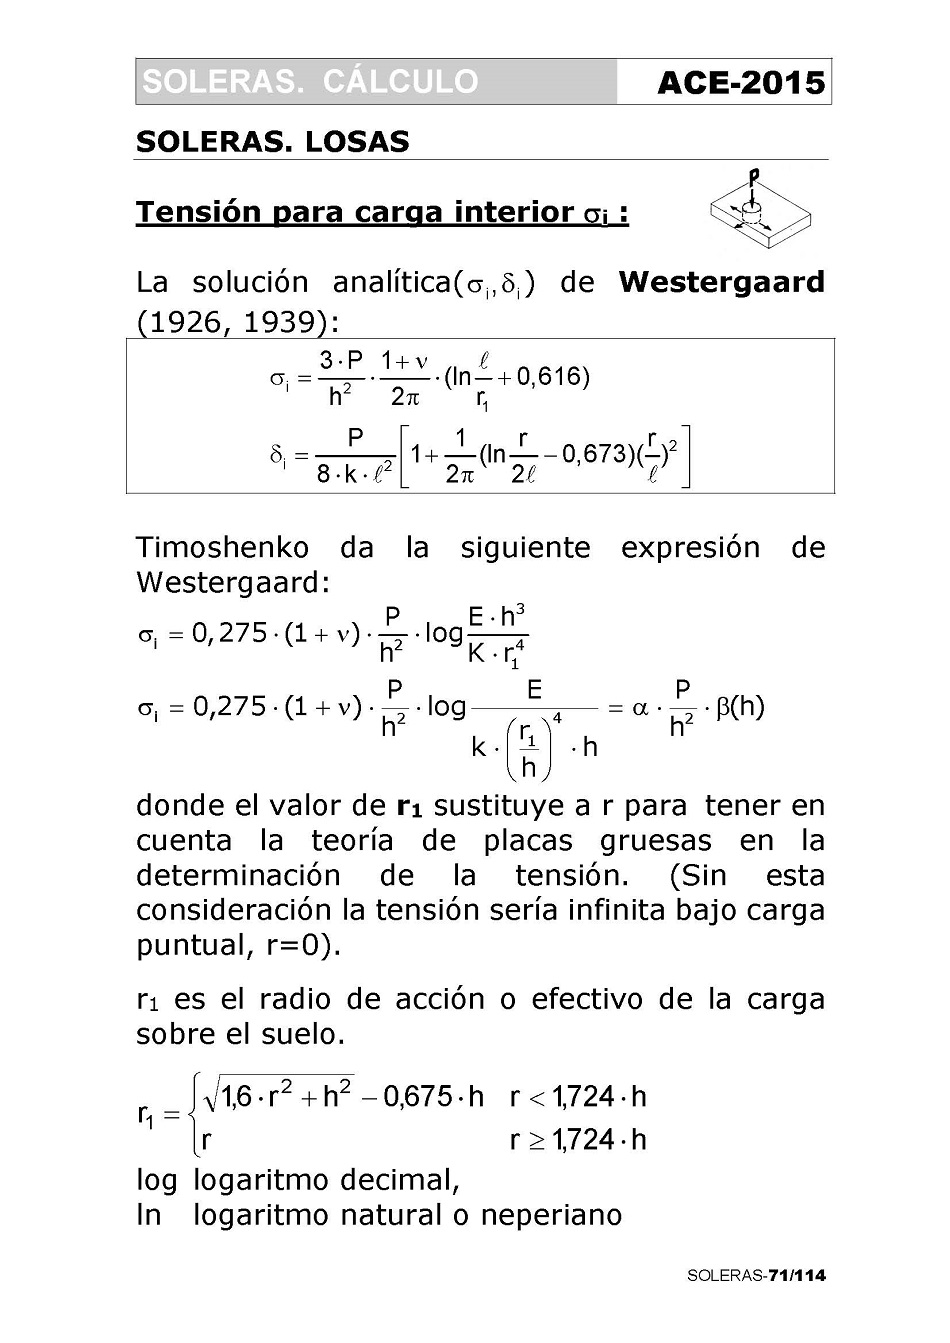 Cálculo de Soleras de Hormigón. Página 71